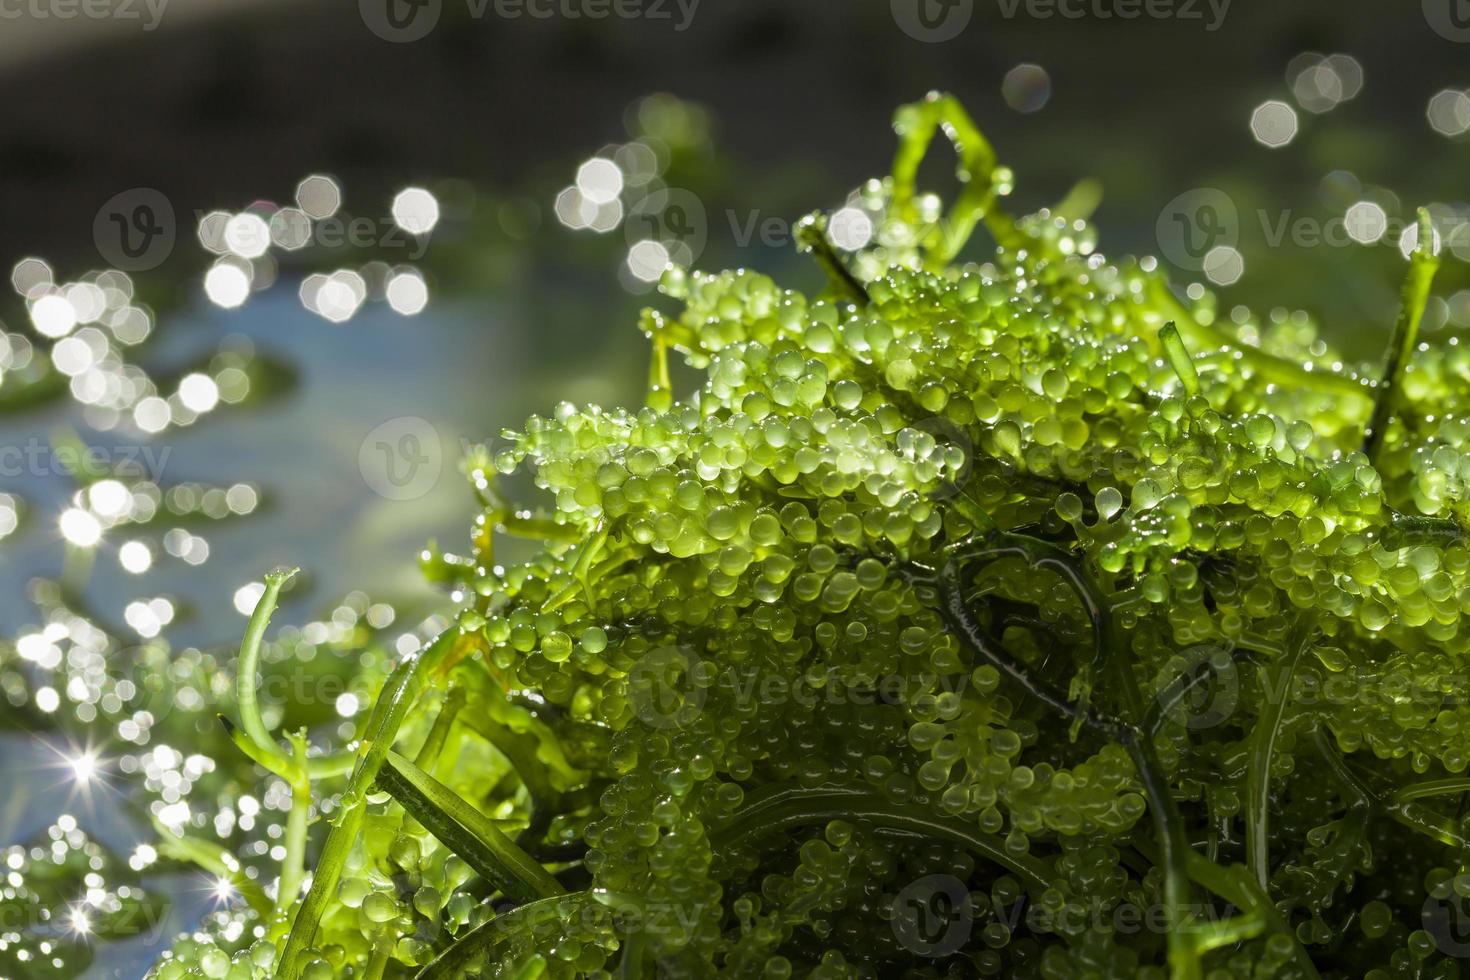 Seetrauben grüner Kaviar Algen gesundes Essen foto